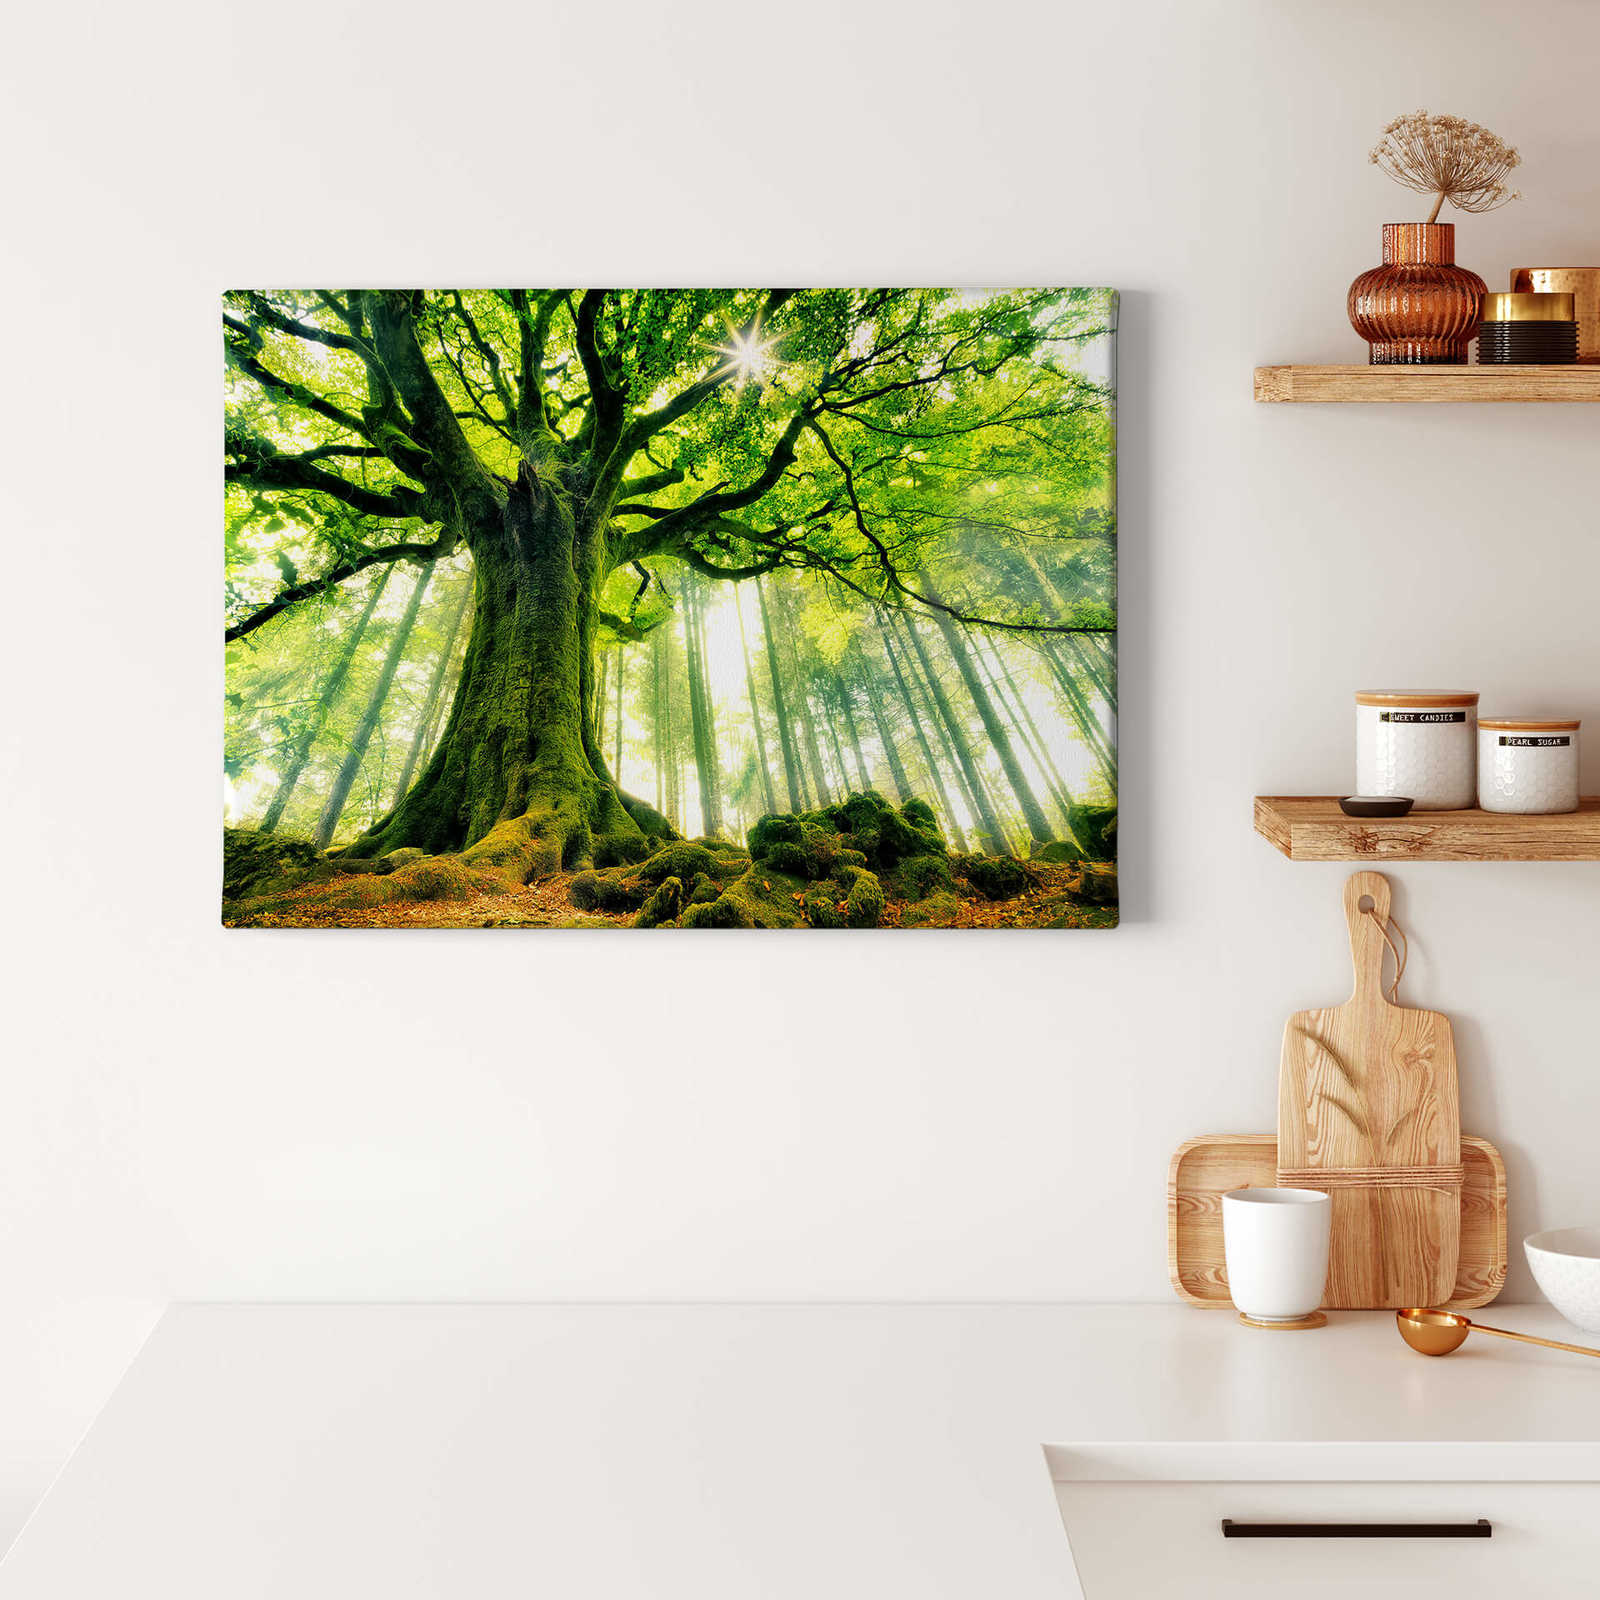             Kiciak Tableau sur toile Forêt de feuilles avec ambiance de conte de fées - 0,70 m x 0,50 m
        